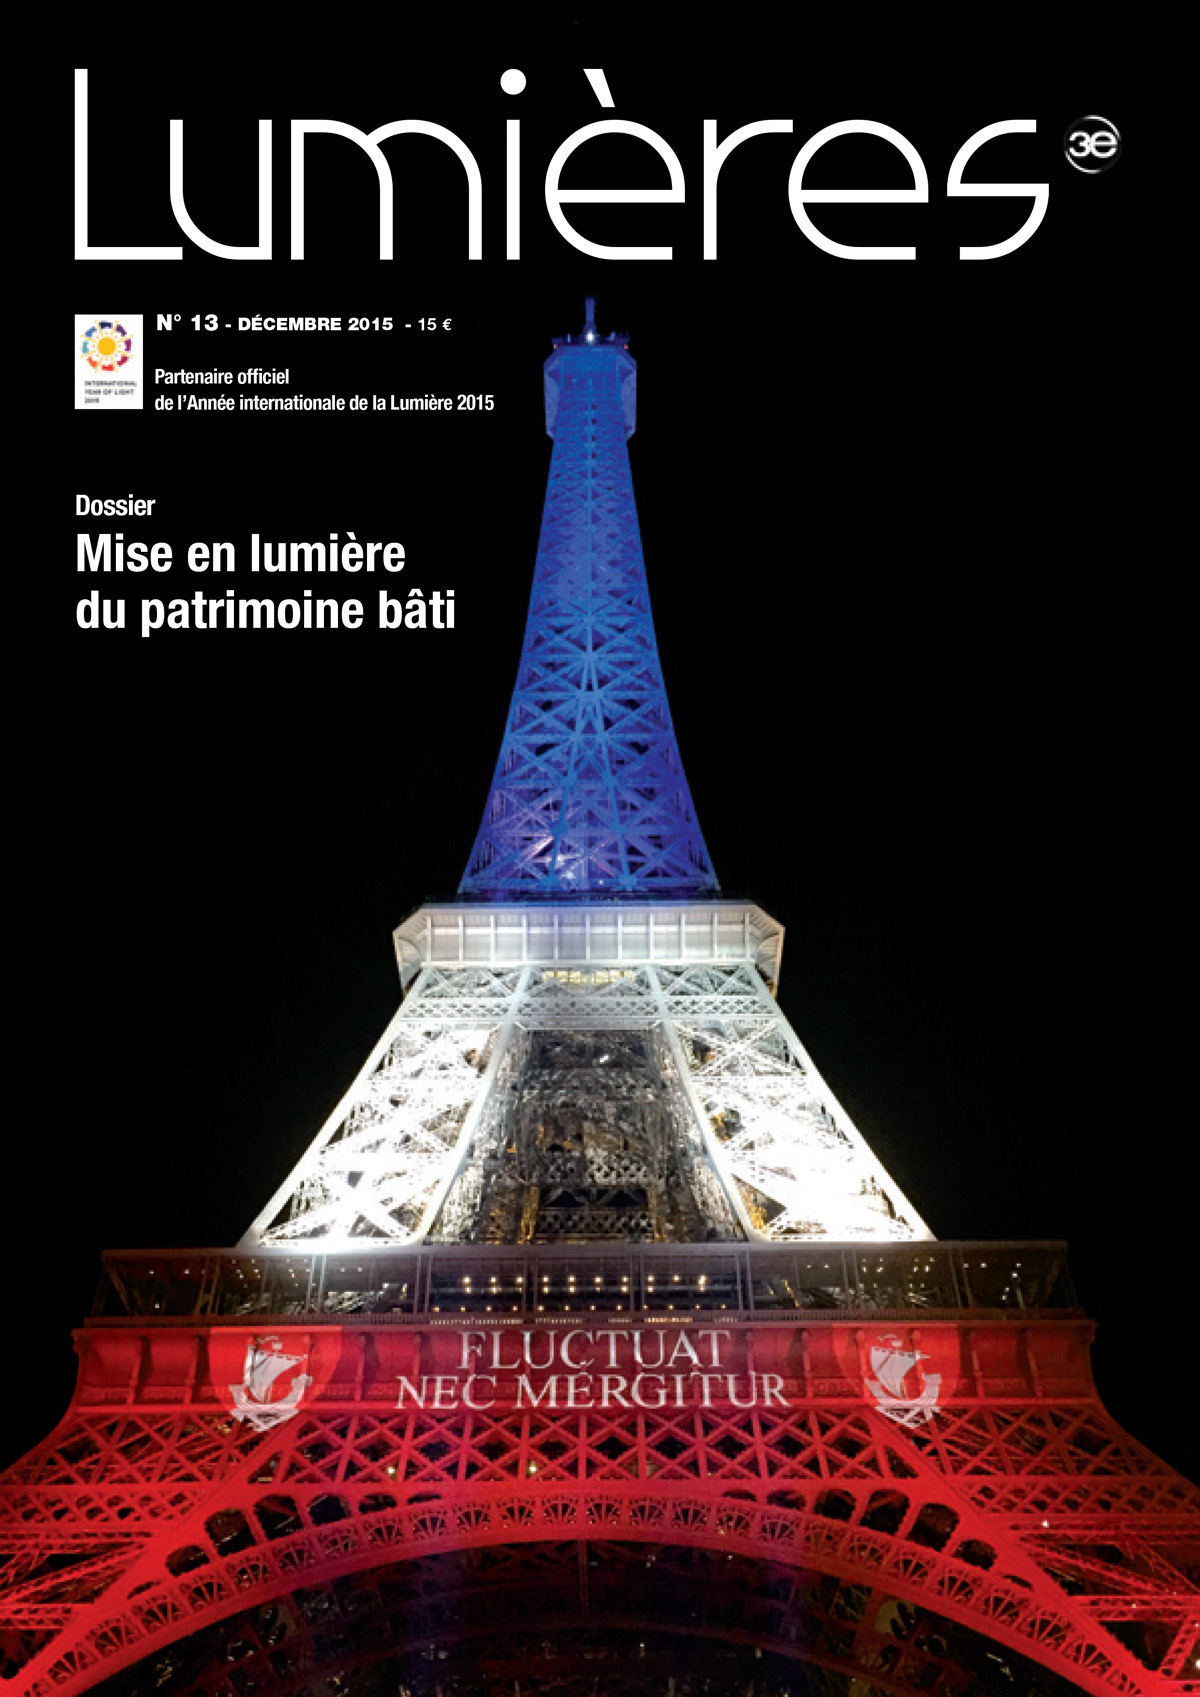 Revue Lumieres, decembre 2015, No 13 - Tour Eiffel, Hommage au victime des attentats du 13 novembre 2015 - Couverture © 3e Médias - Photo : Isabelle Arnaud